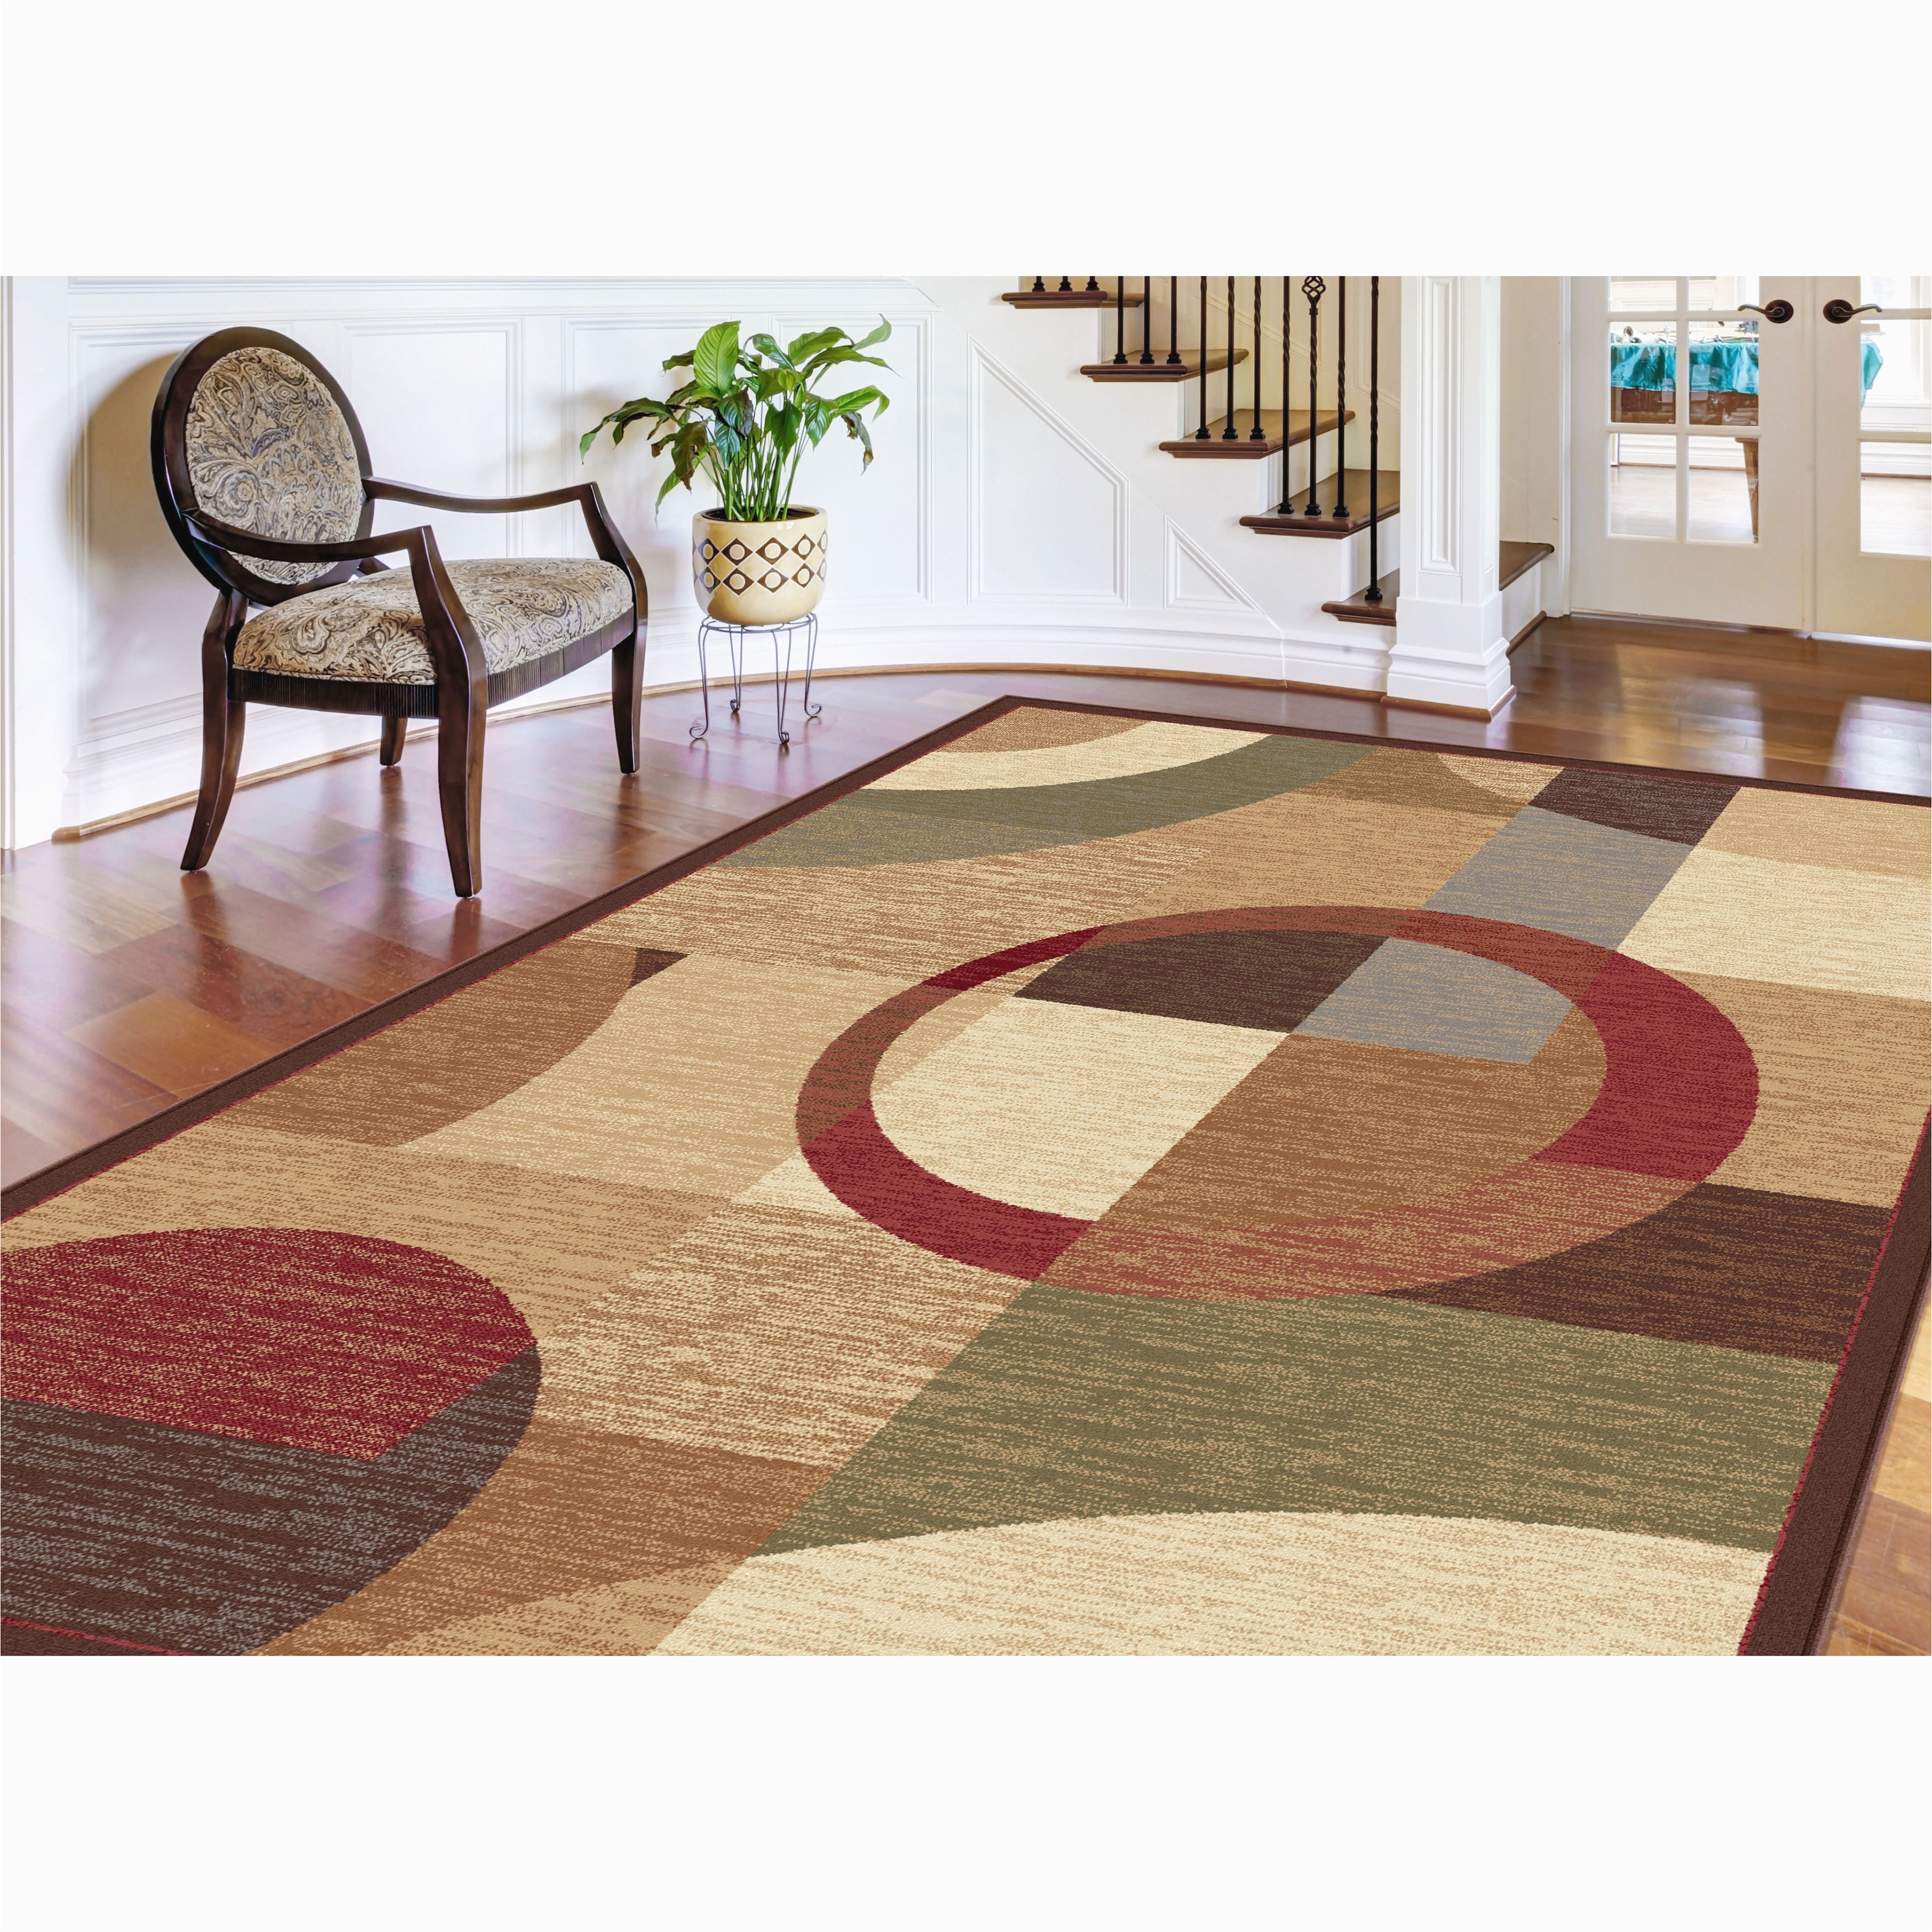 costco indoor outdoor rugs new 31 coolest costco bath mat images of costco indoor outdoor rugs